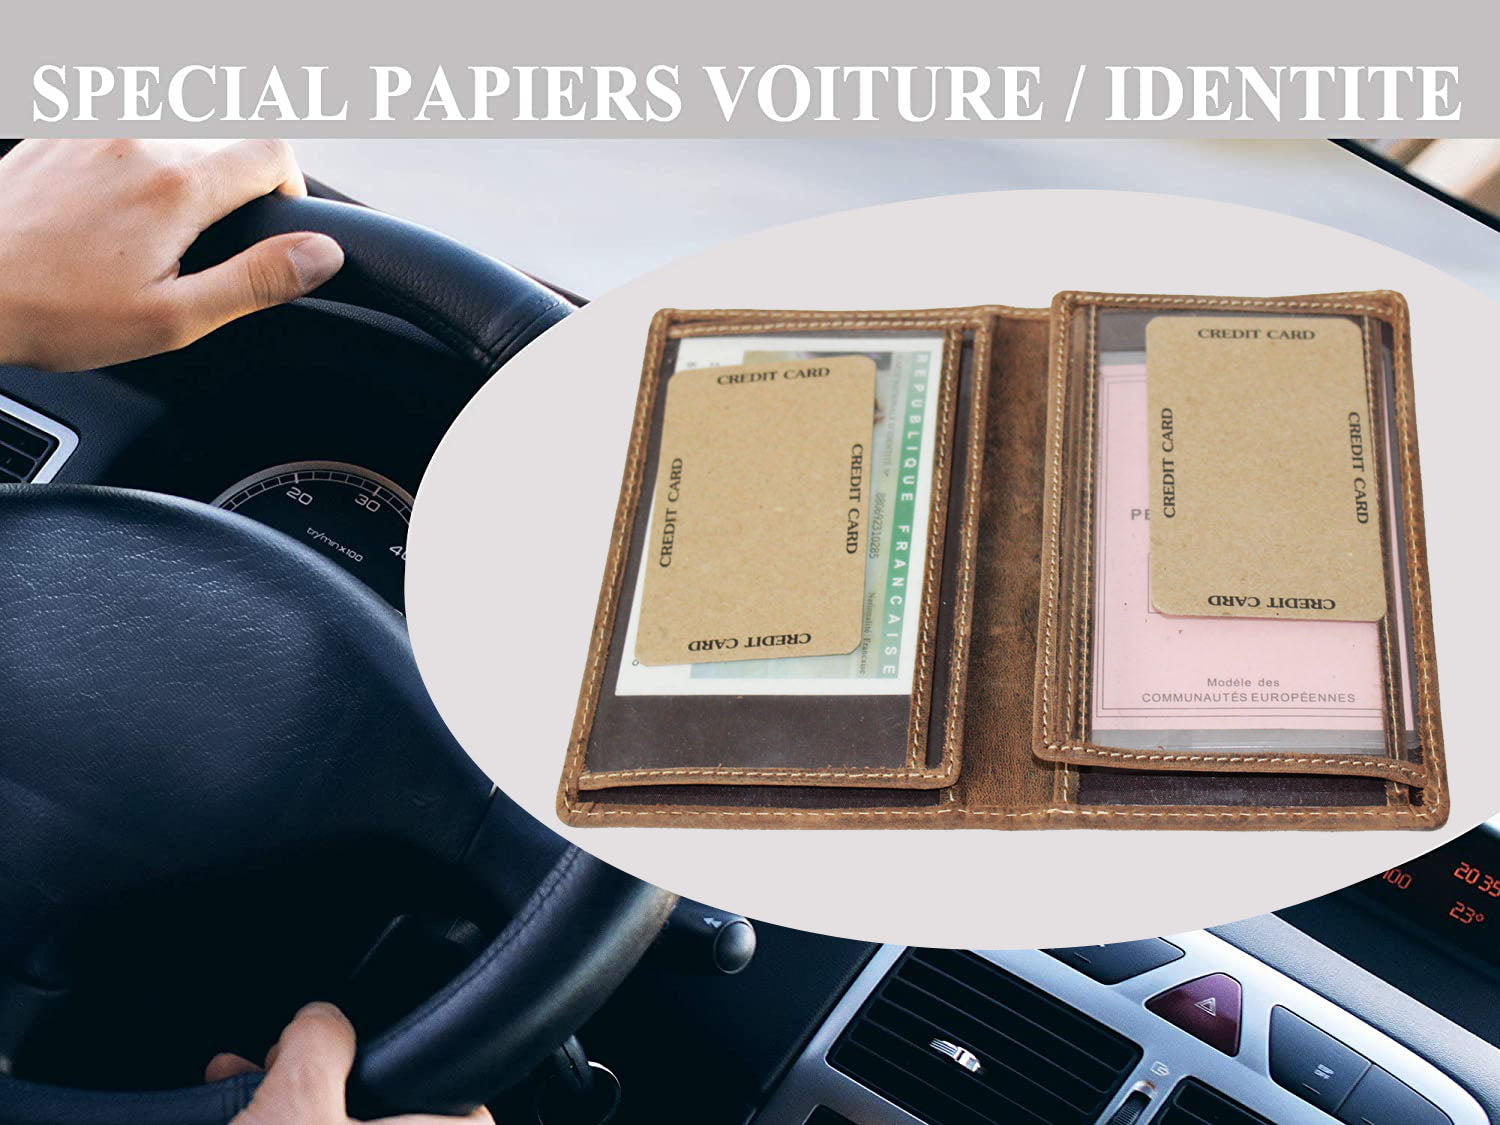 Etuis papiers voiture / porte cartes – Lilosac